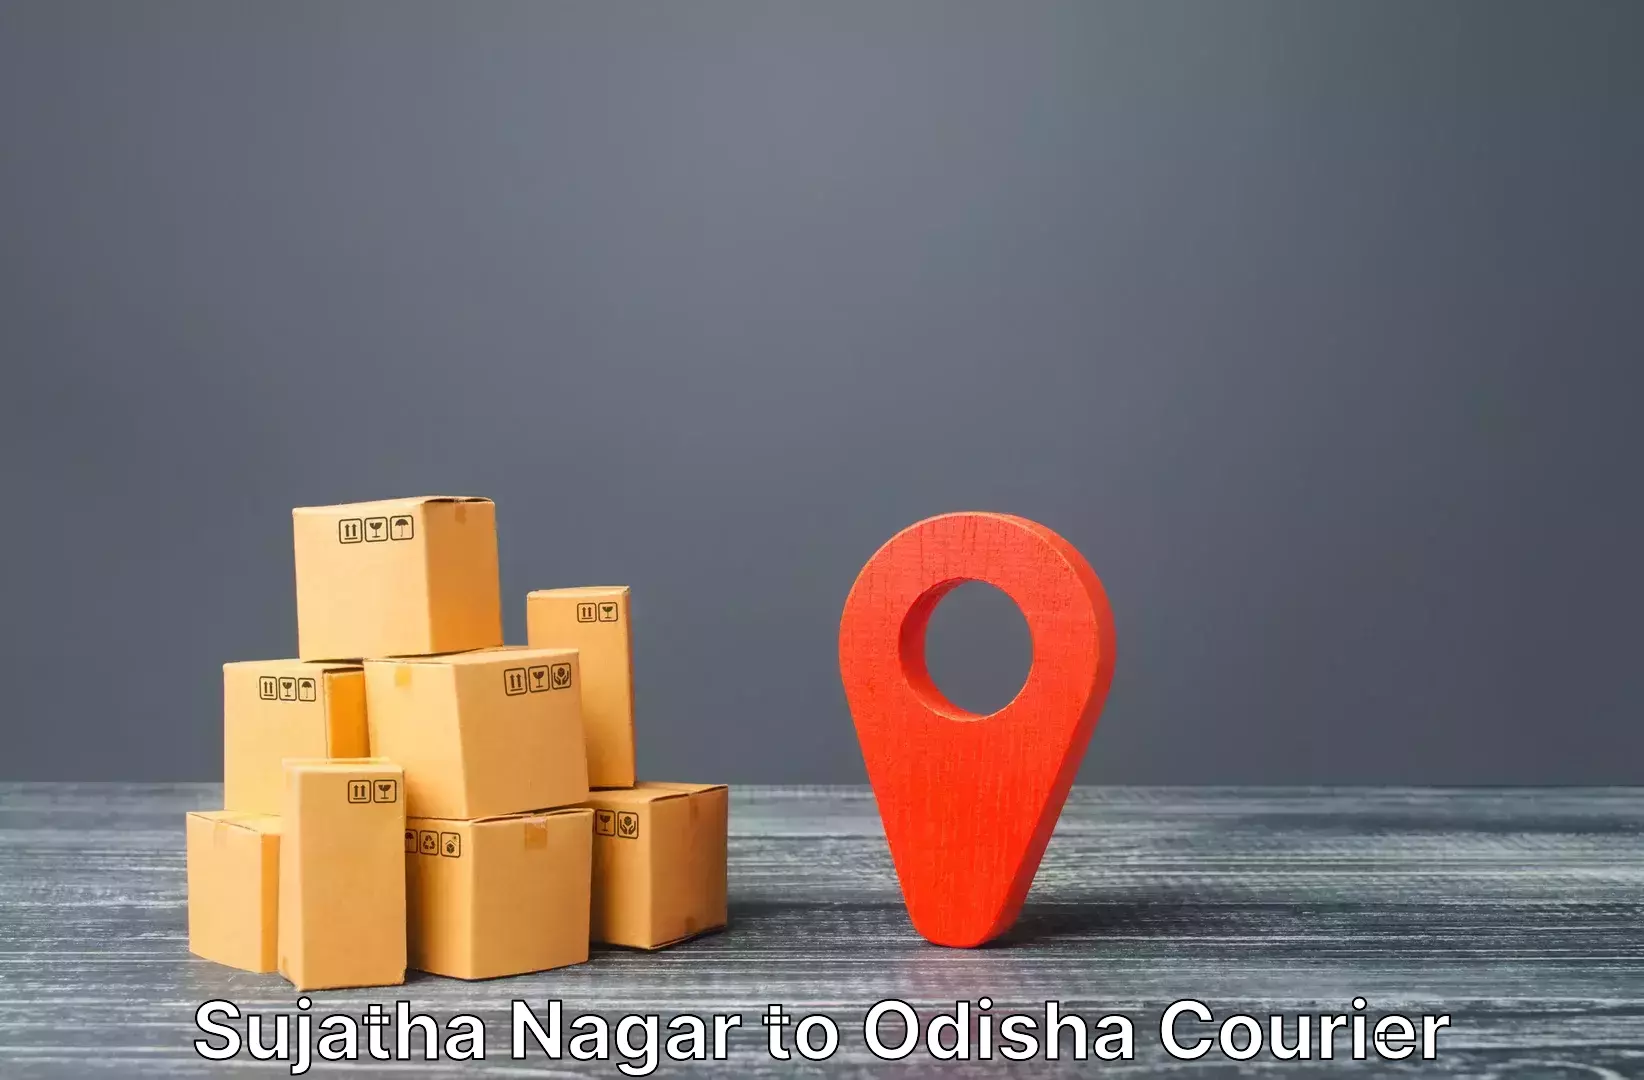 Luggage delivery network Sujatha Nagar to Kantabanji